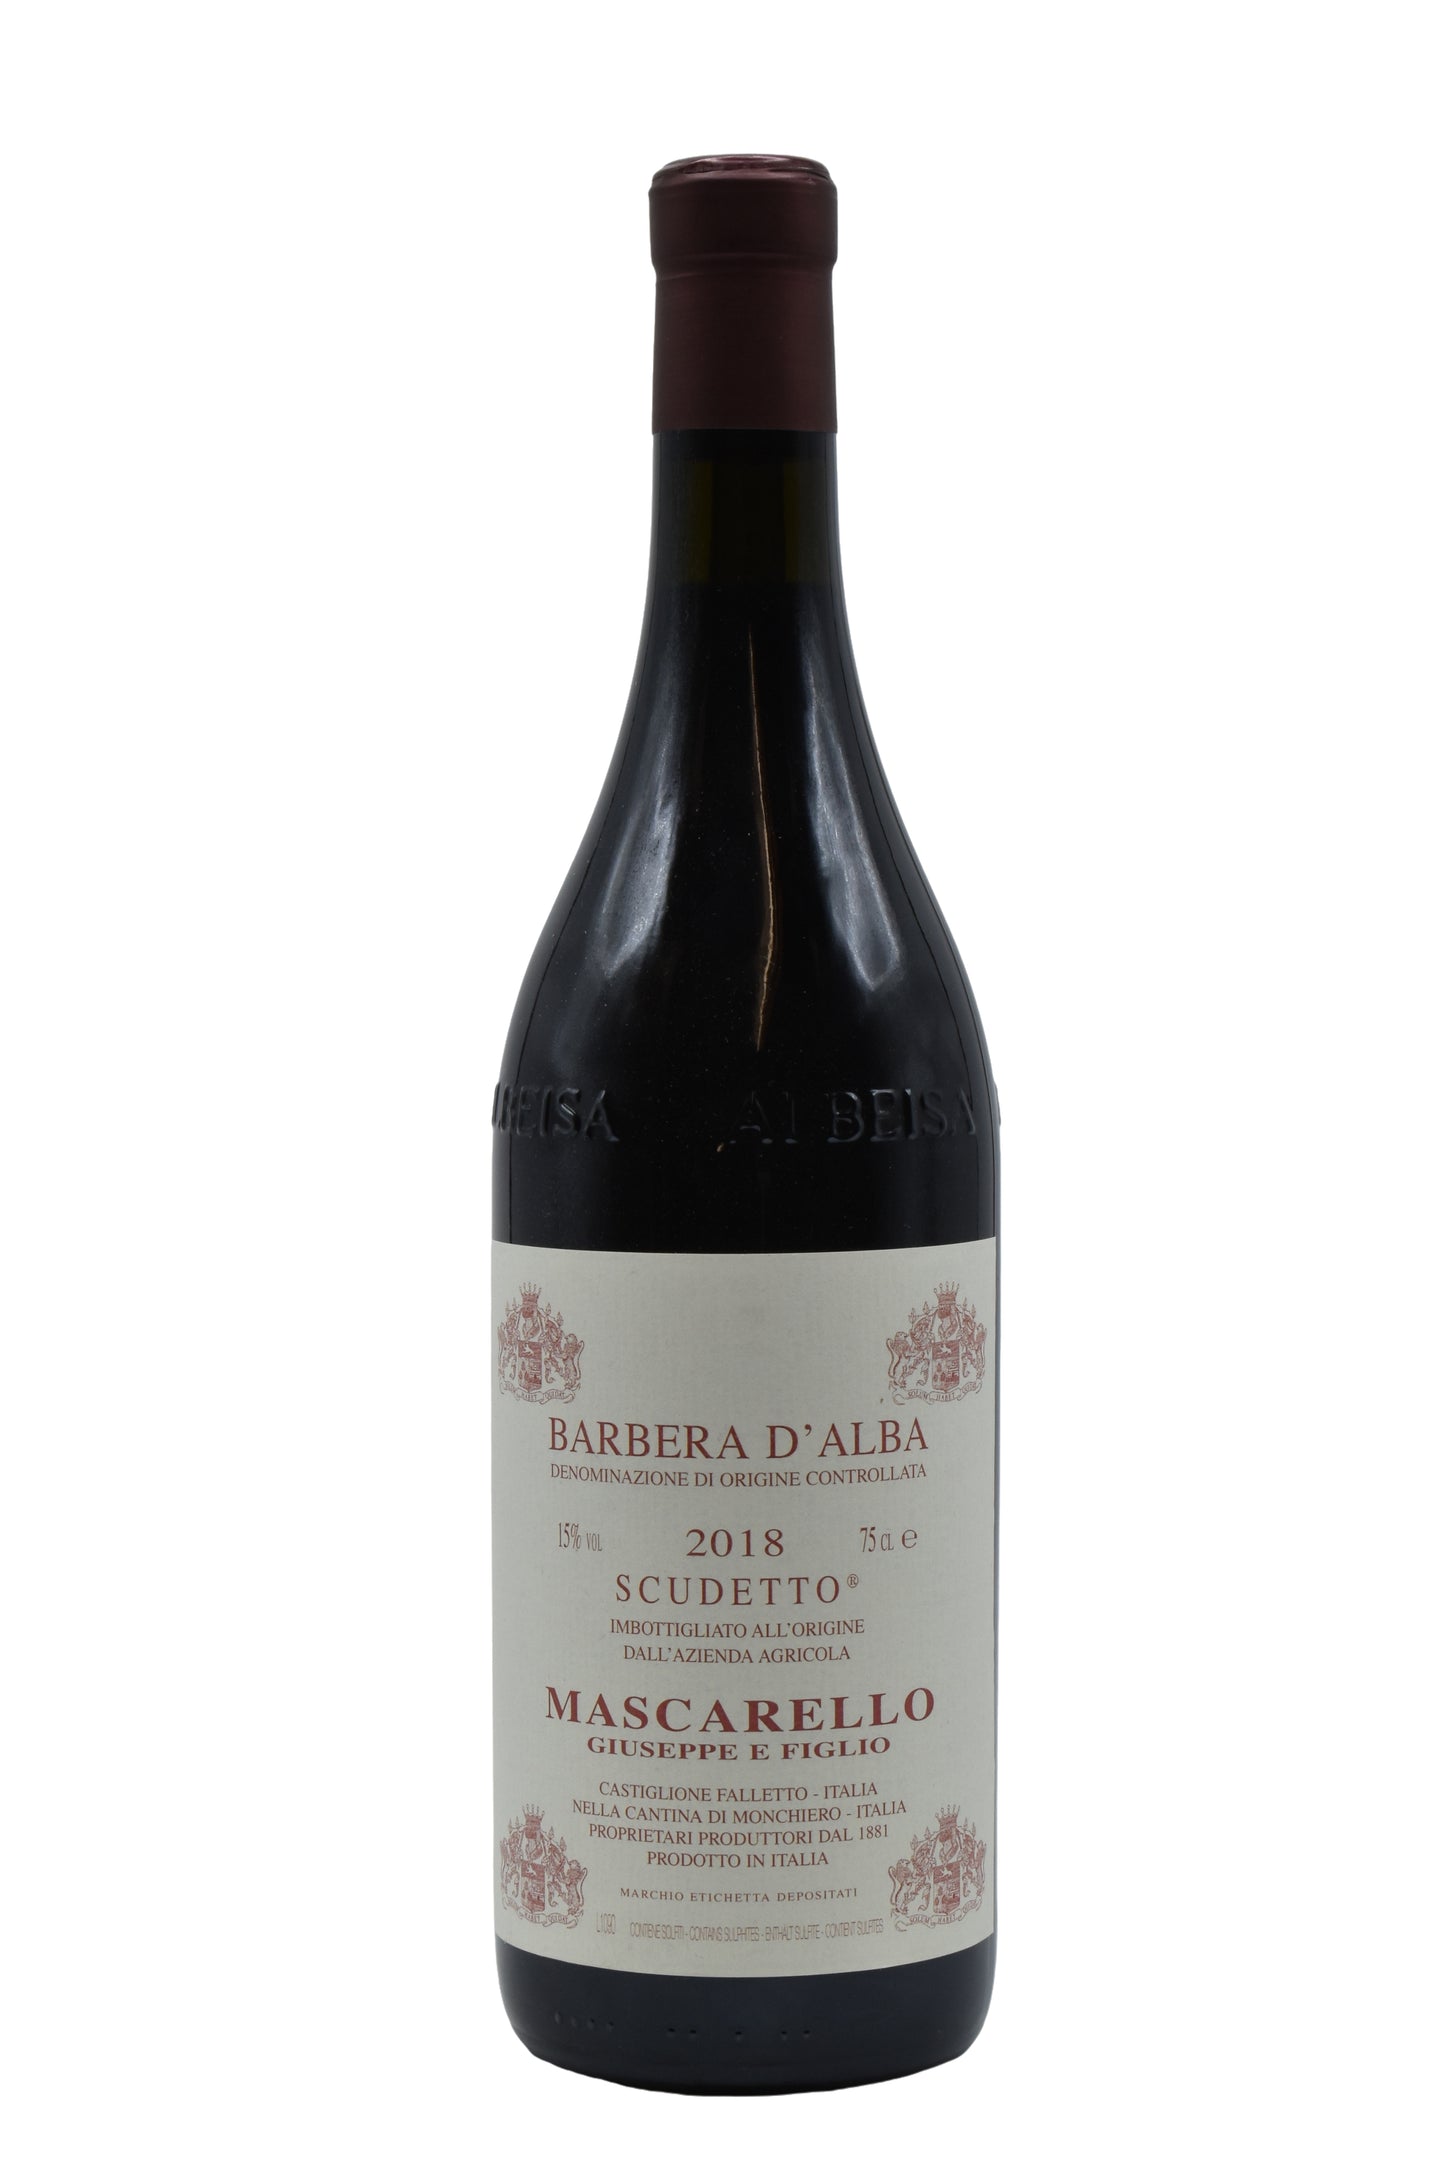 2018 Mascarello (Giuseppe), Barbera d'Alba Scudetto 750ml - Walker Wine Co.